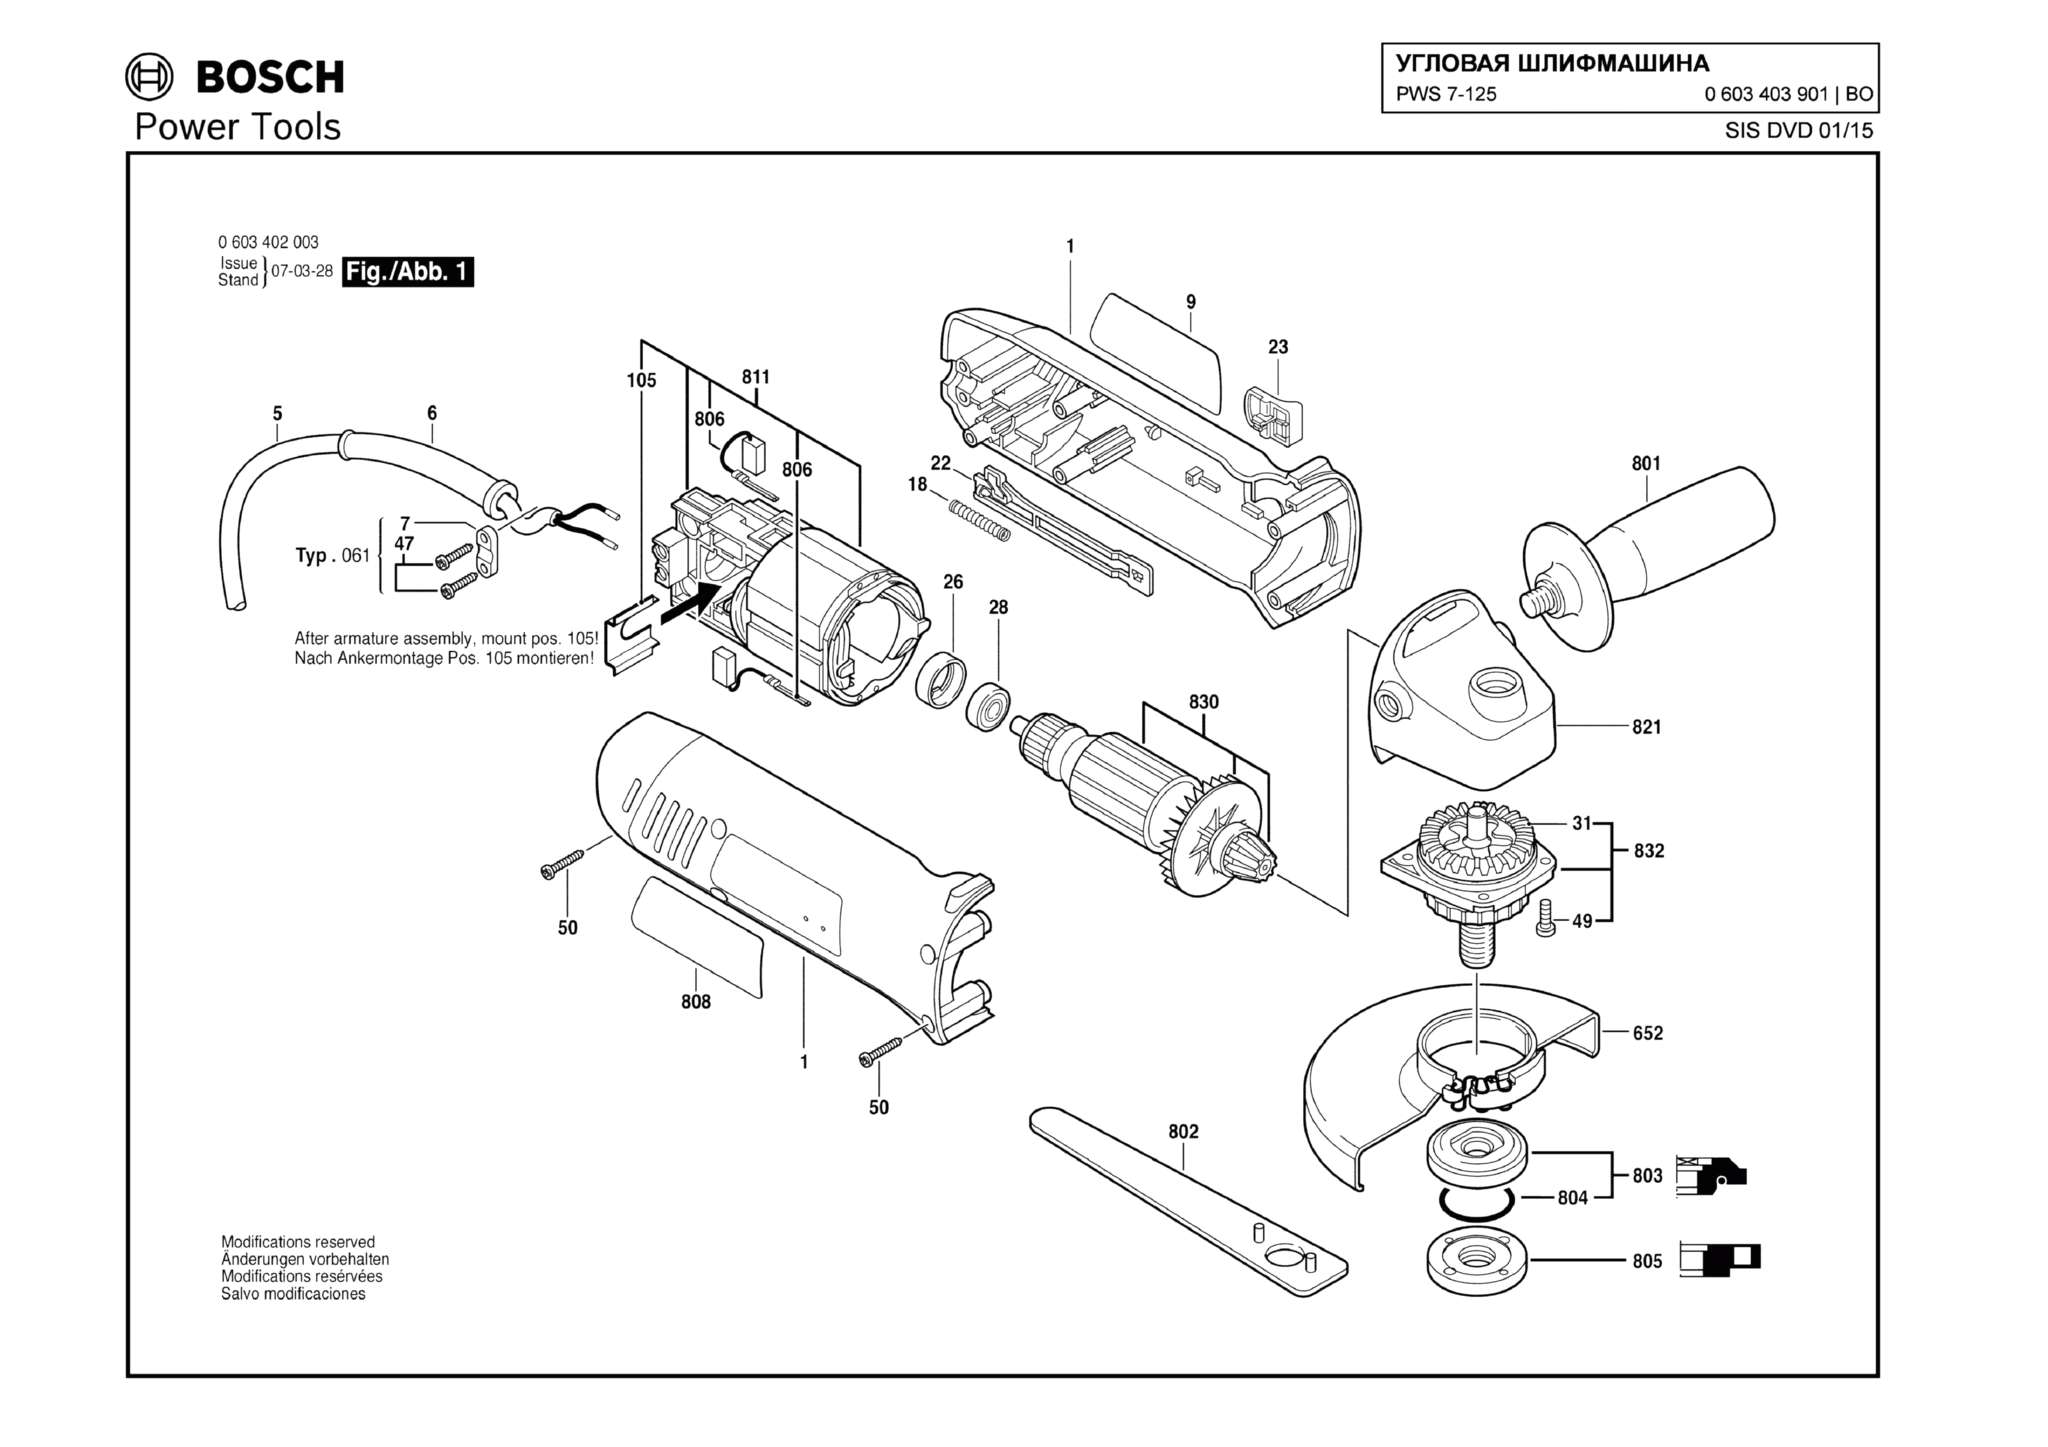 Запчасти, схема и деталировка Bosch PWS 7-125 (ТИП 0603403901)